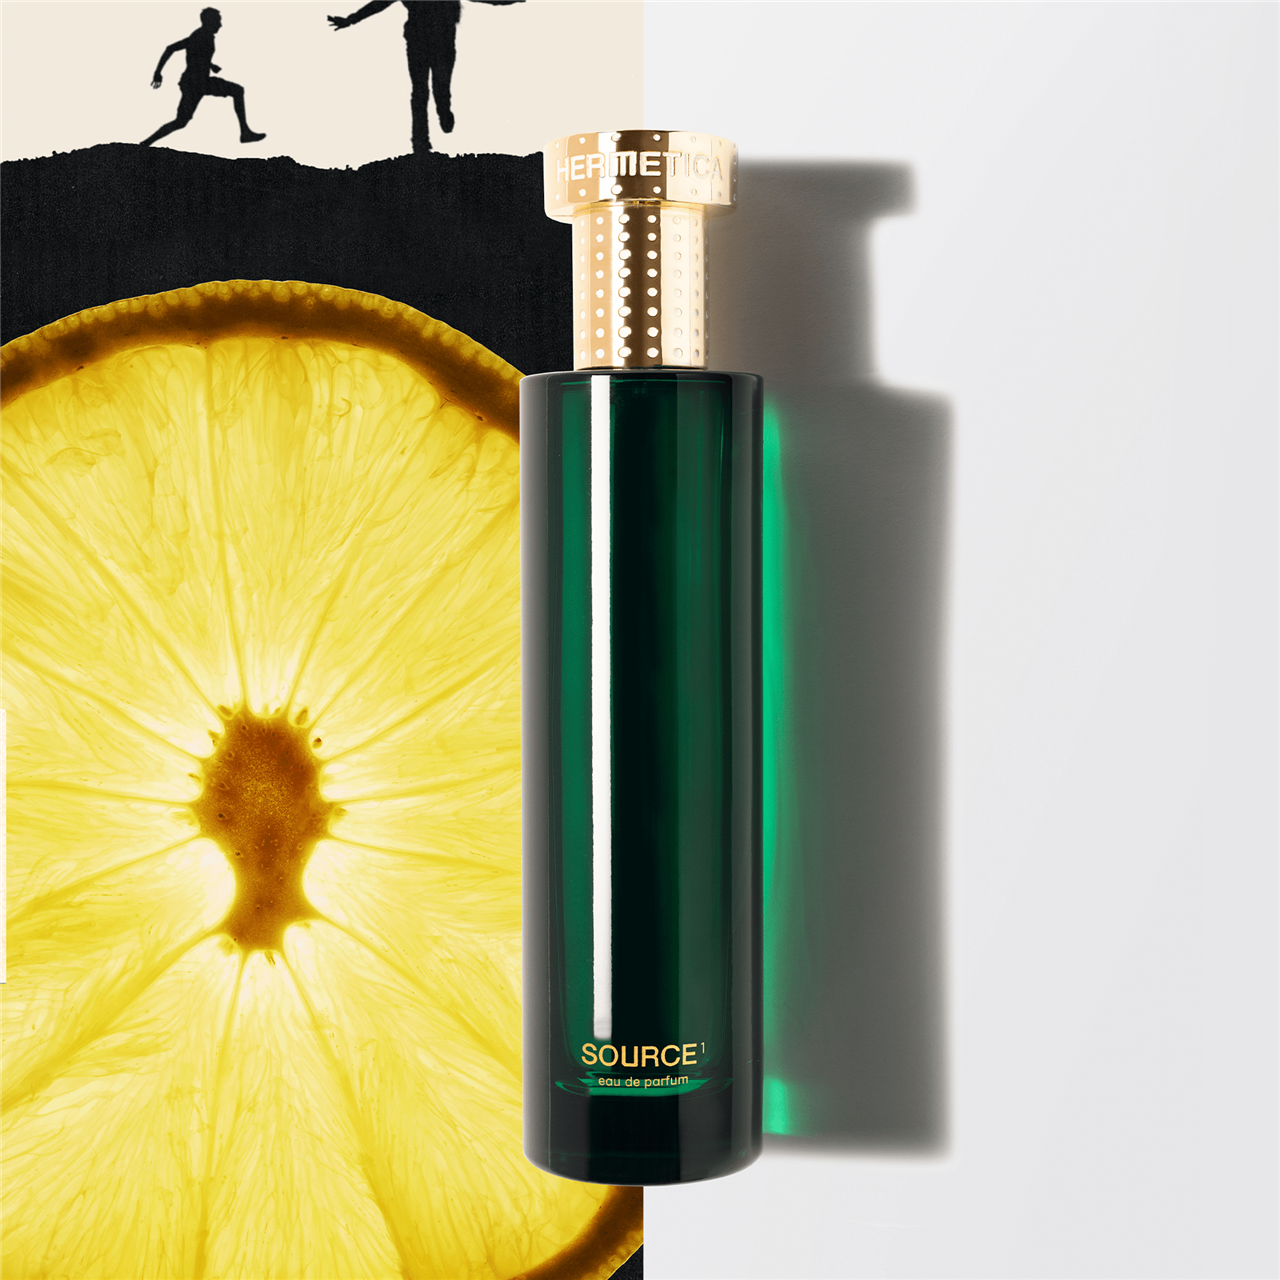 Este perfume ha sido reconocido con los premios Eco Byrdie Awards.